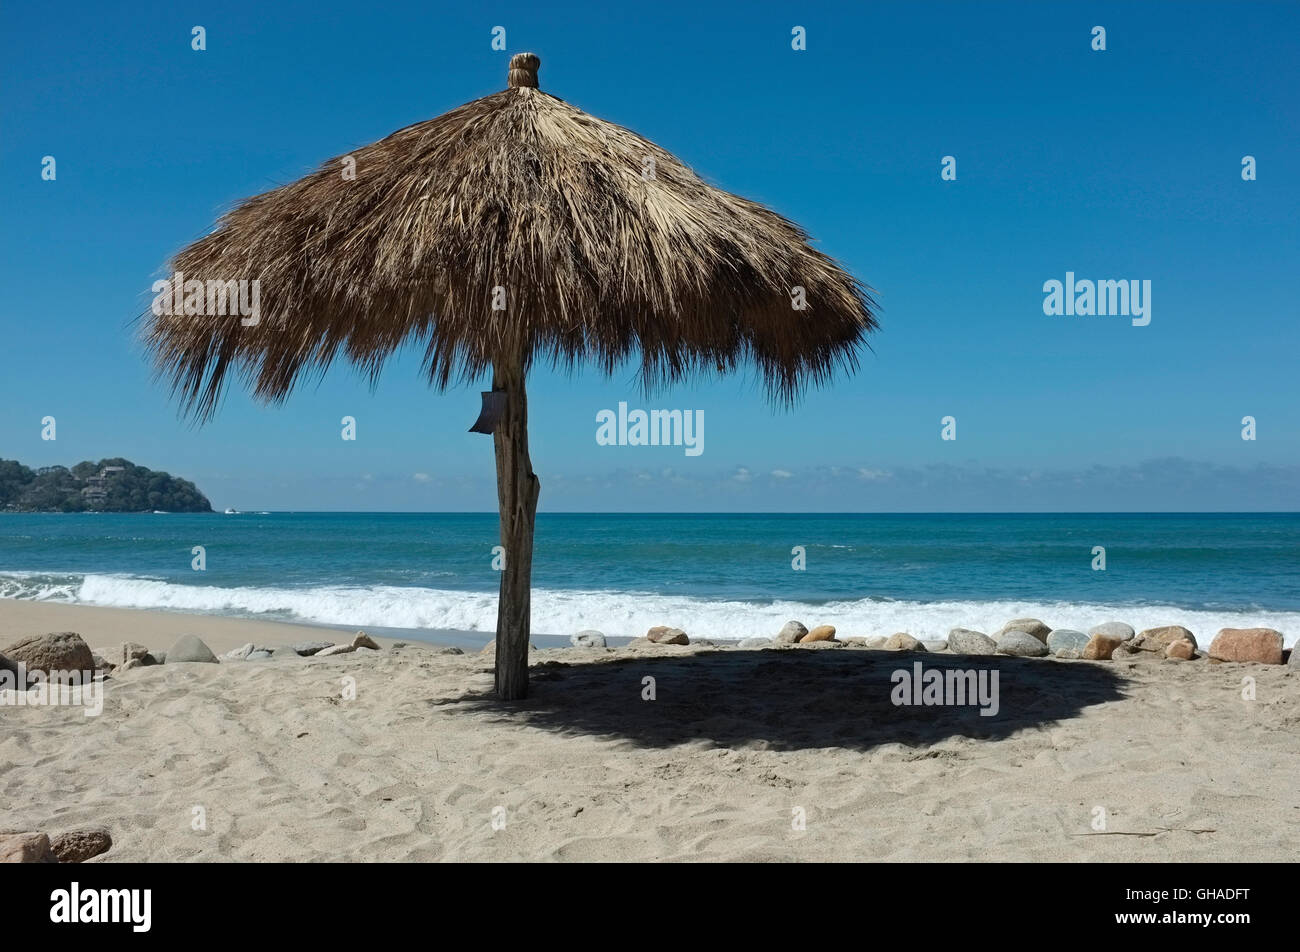 A palapa sun shade on the beach at Sayulita, Riviera Nayarit, Mexico. Stock Photo